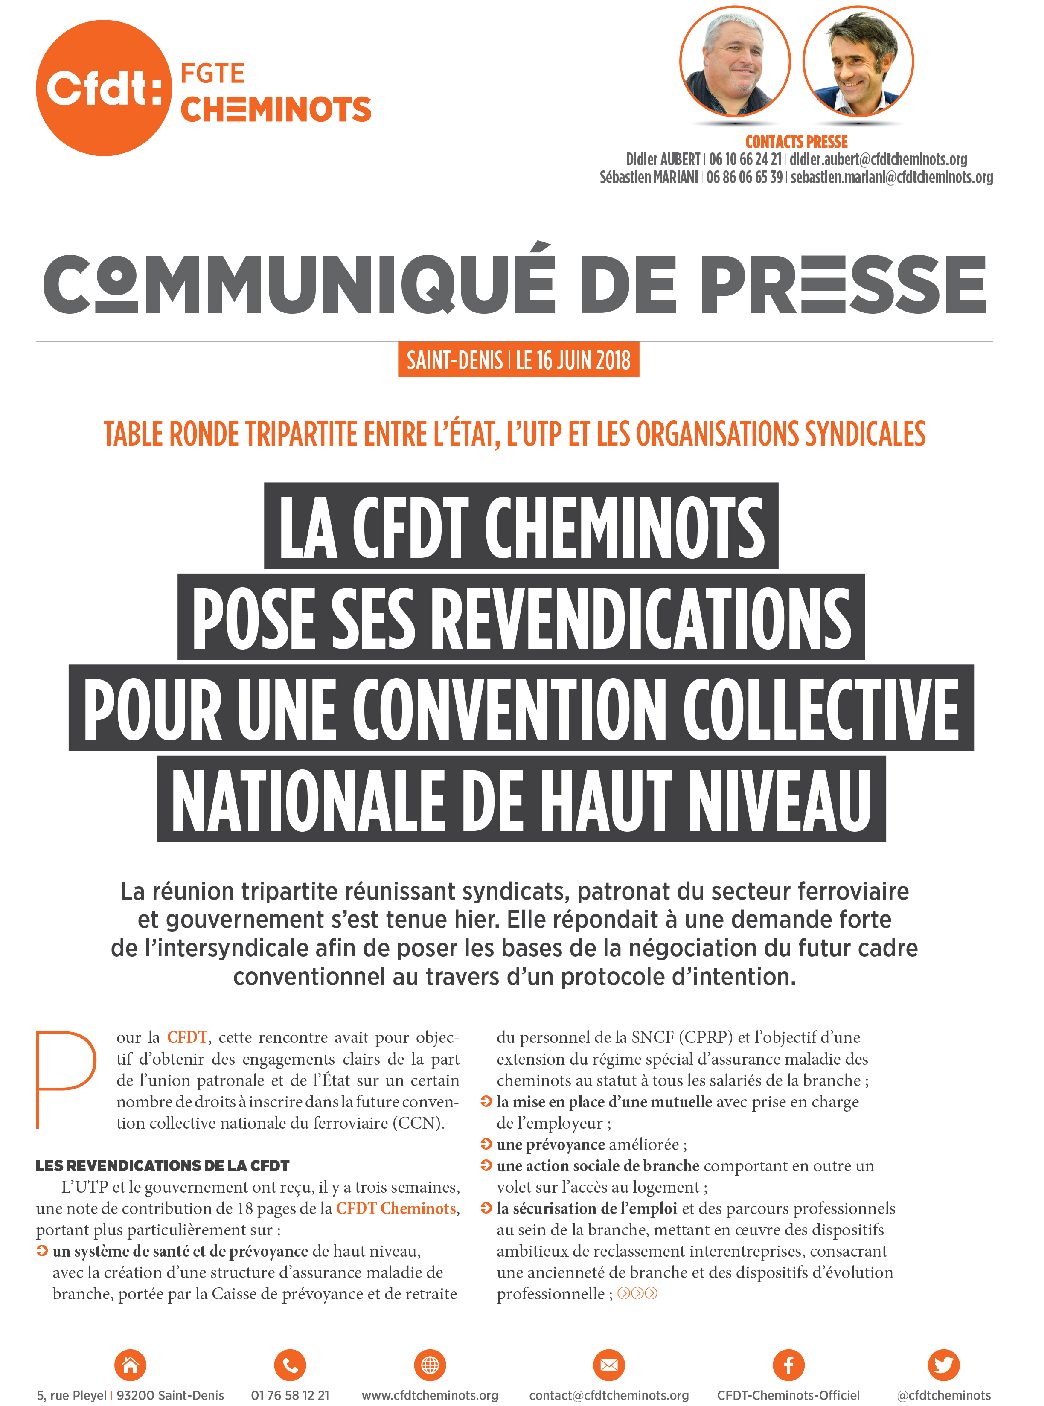 La CFDT Cheminots pose ses revendications pour une convention collective nationale de haut niveau